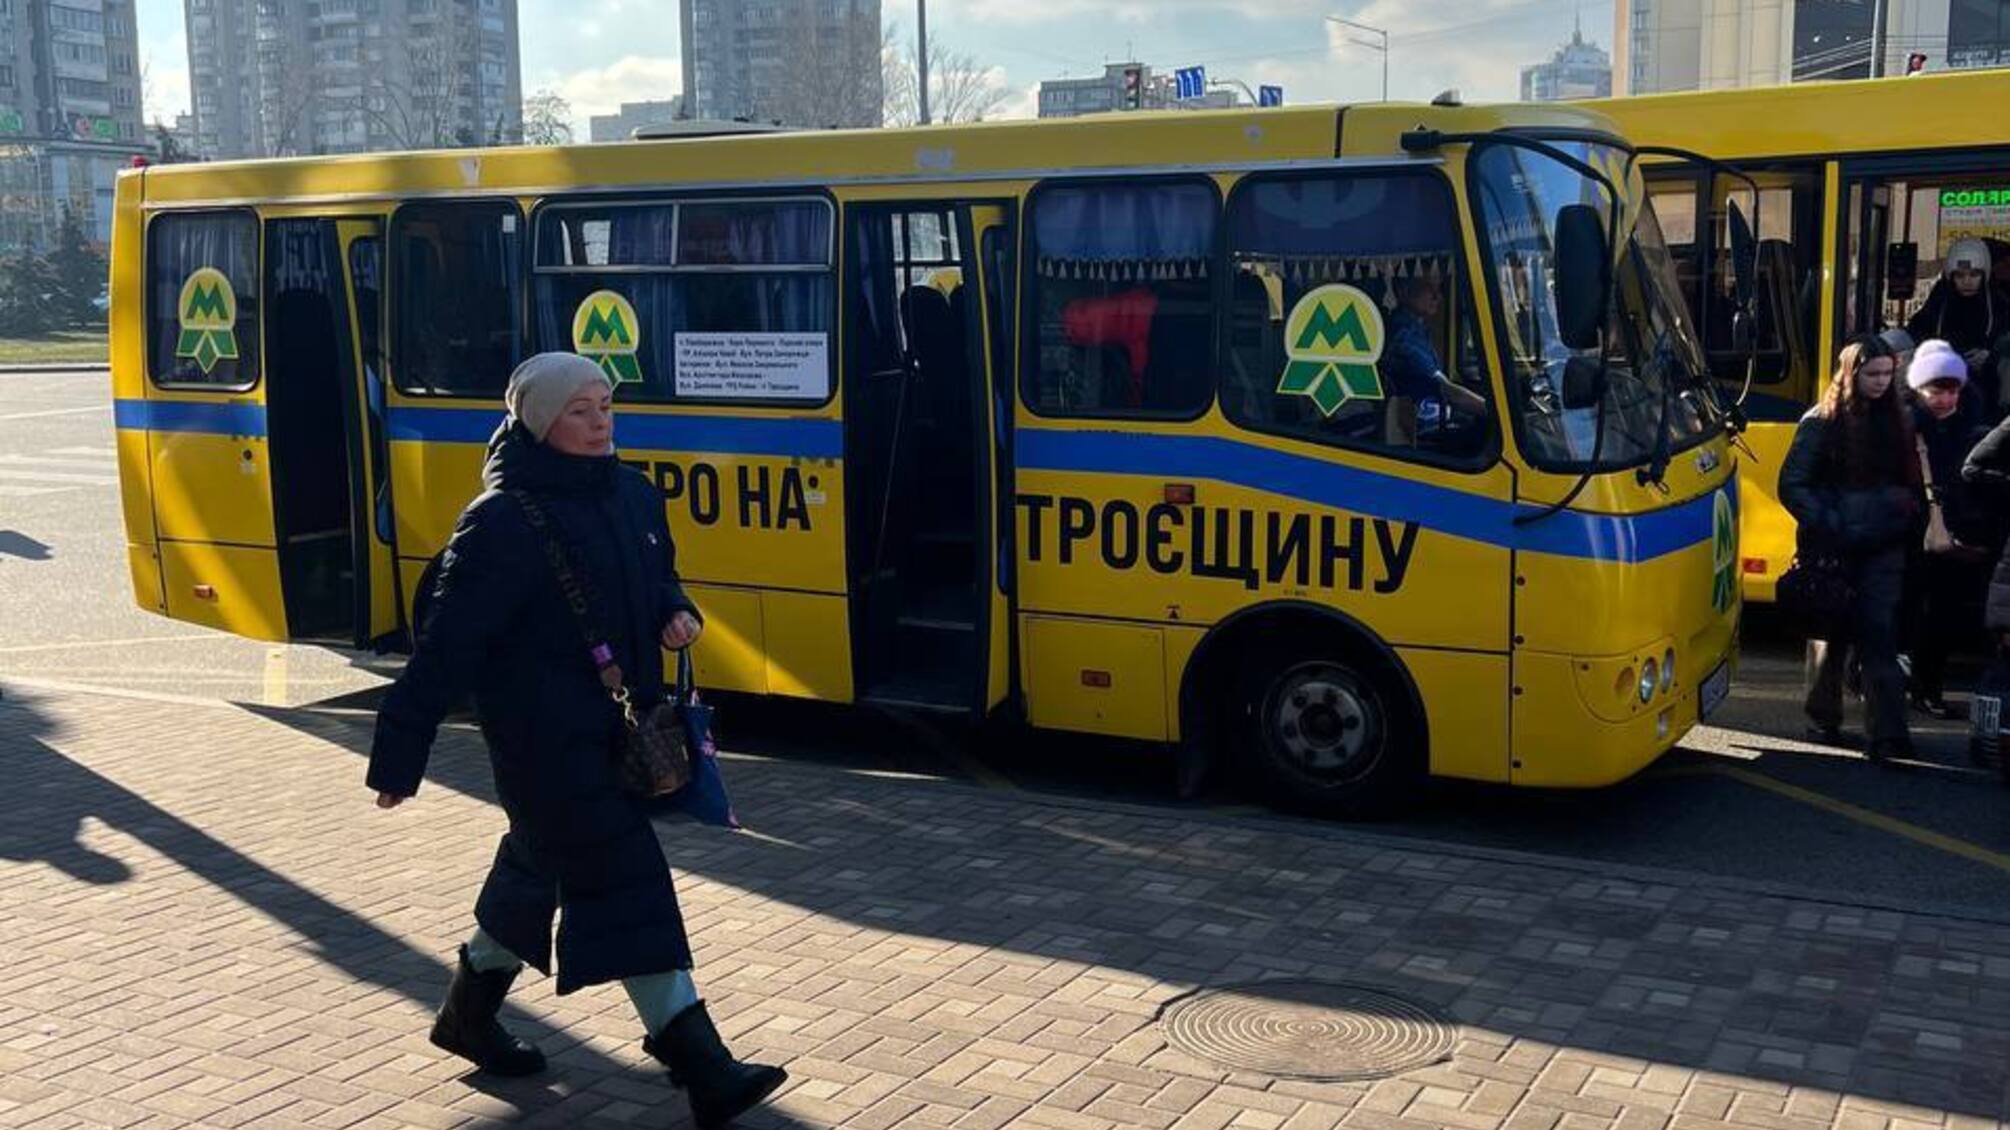 У Києві запустили 'метро на Троєщину'? Місцеві жителі бурхливо відреагували в соцмережах